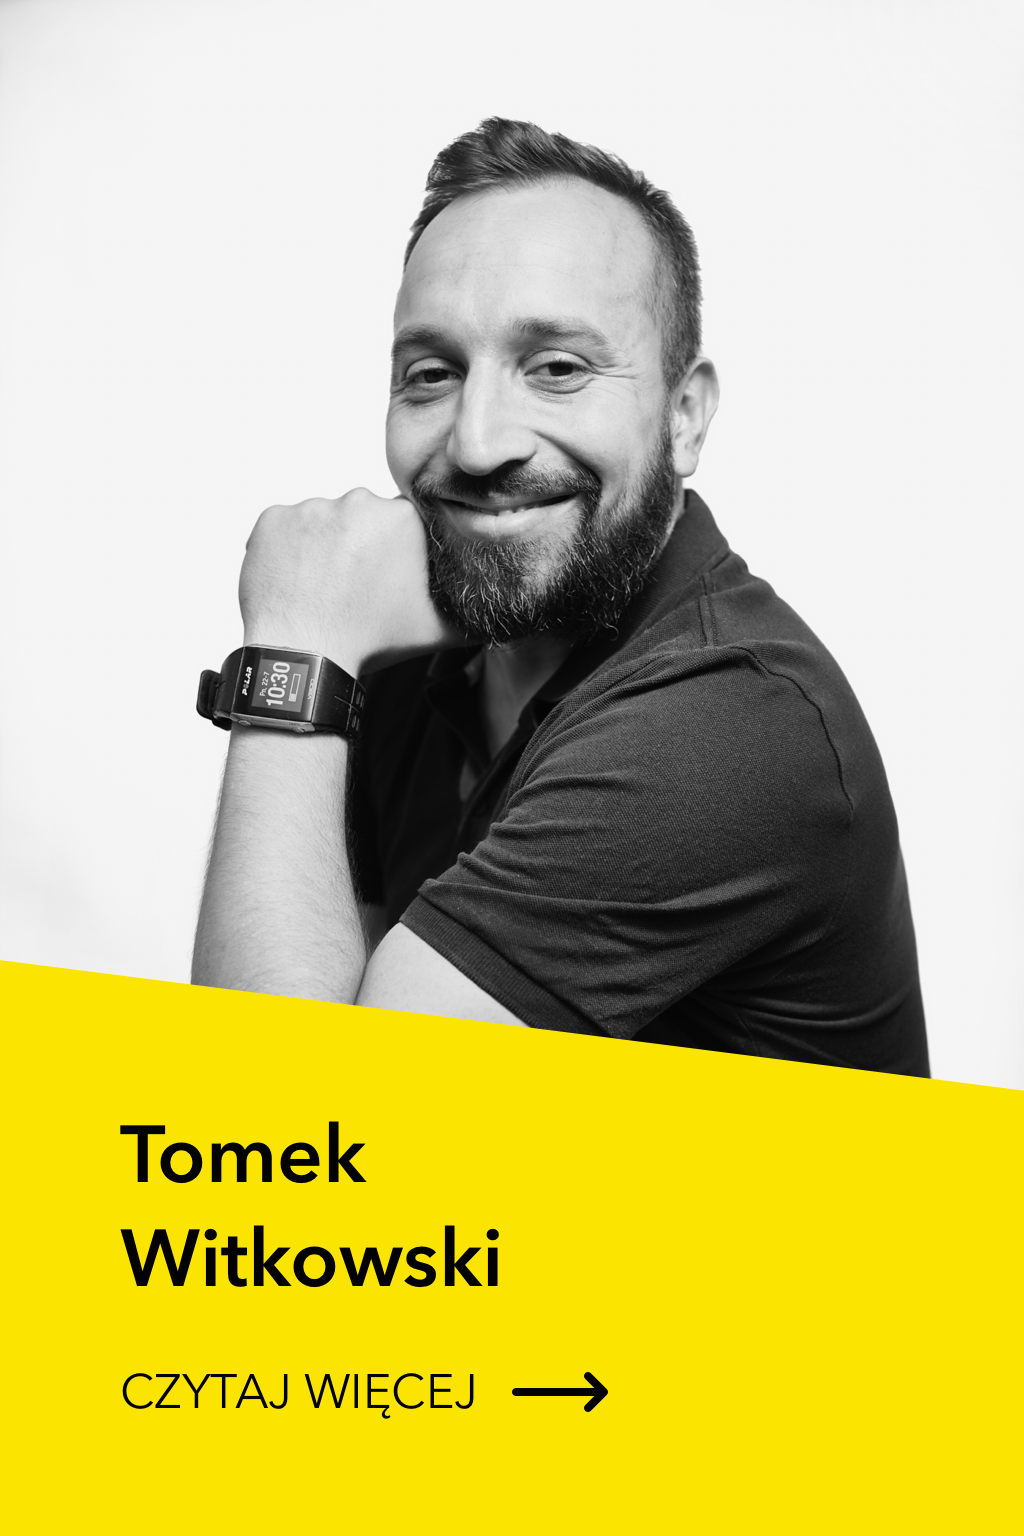 Tomek Witkowski